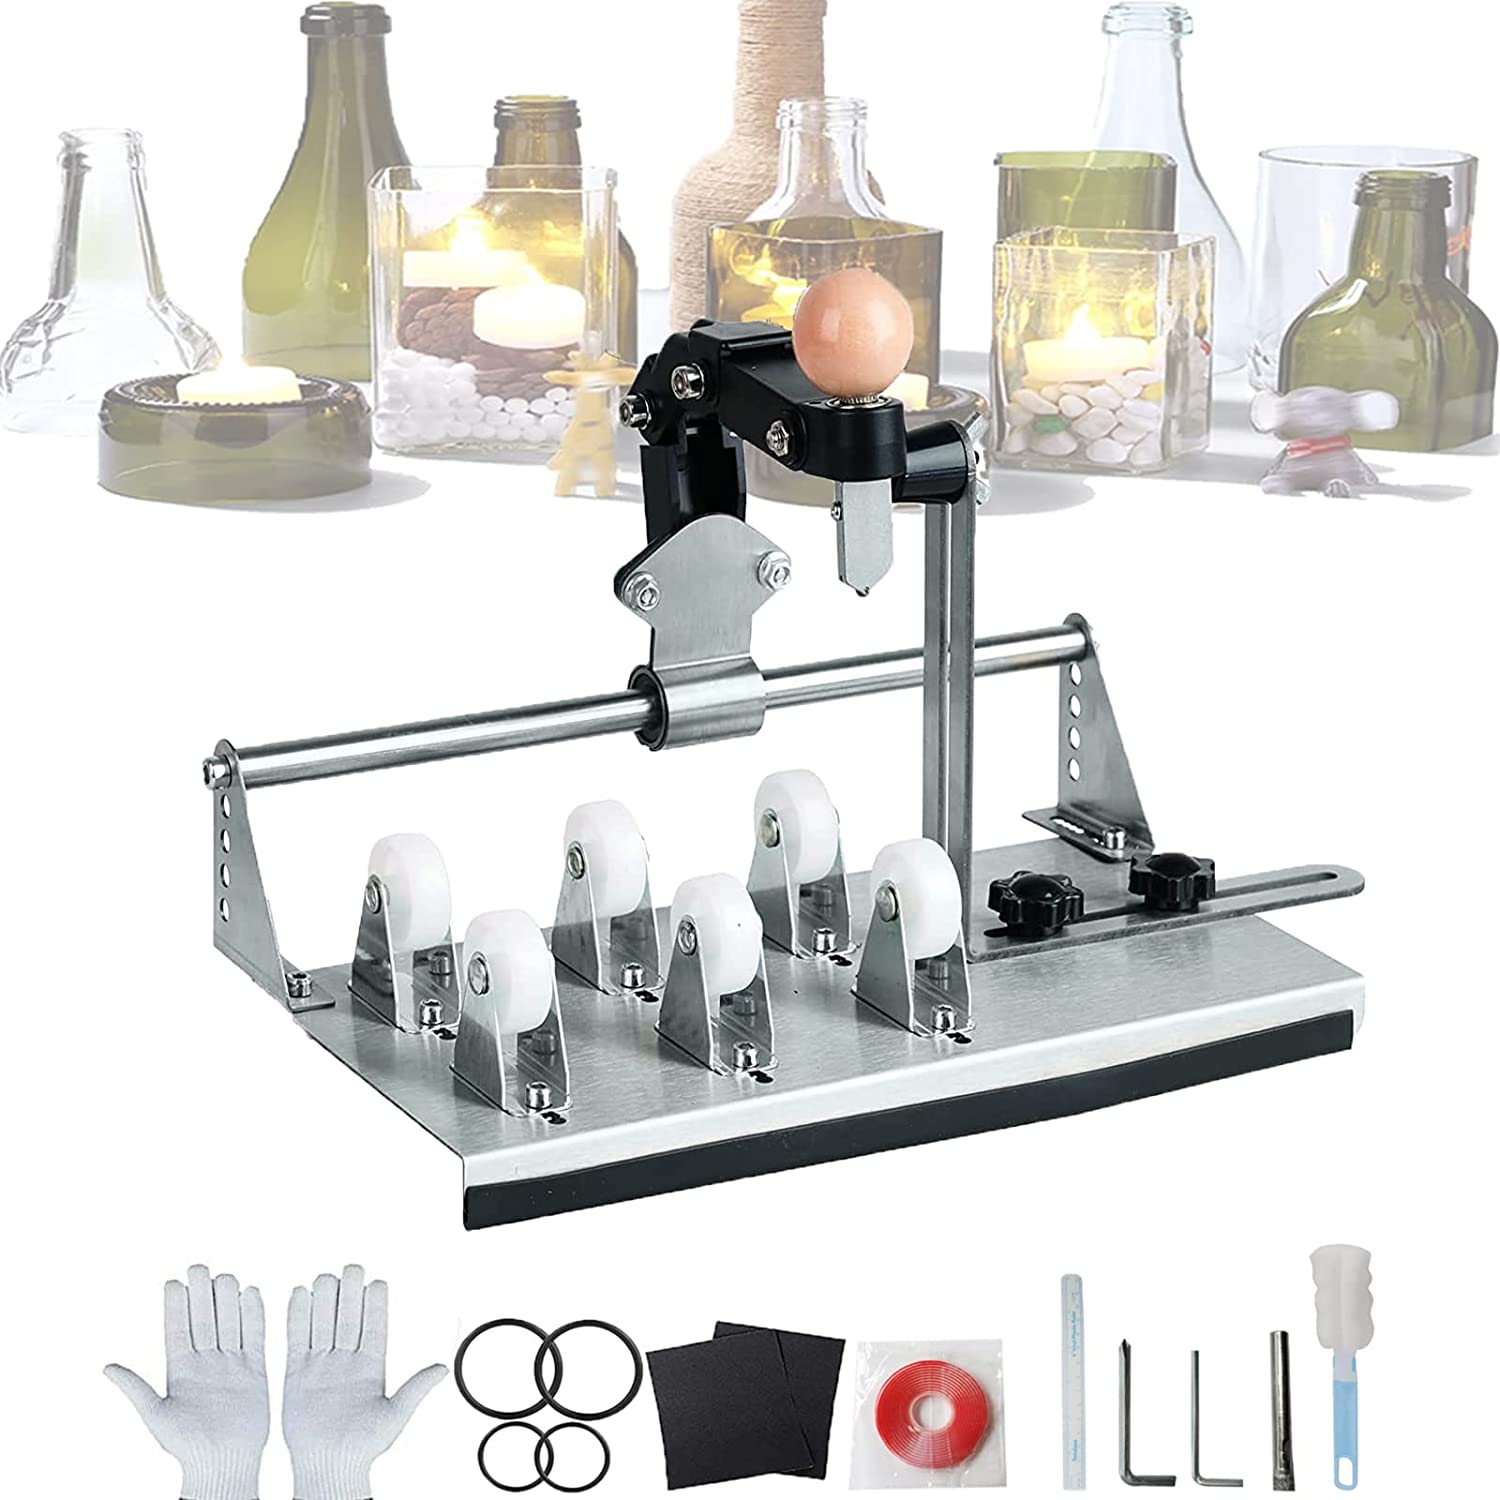 Glass Bottle Cutter & Glass Cutting Oil, Premium Glass Cutter for Bottles & Glass  Cutting Oil